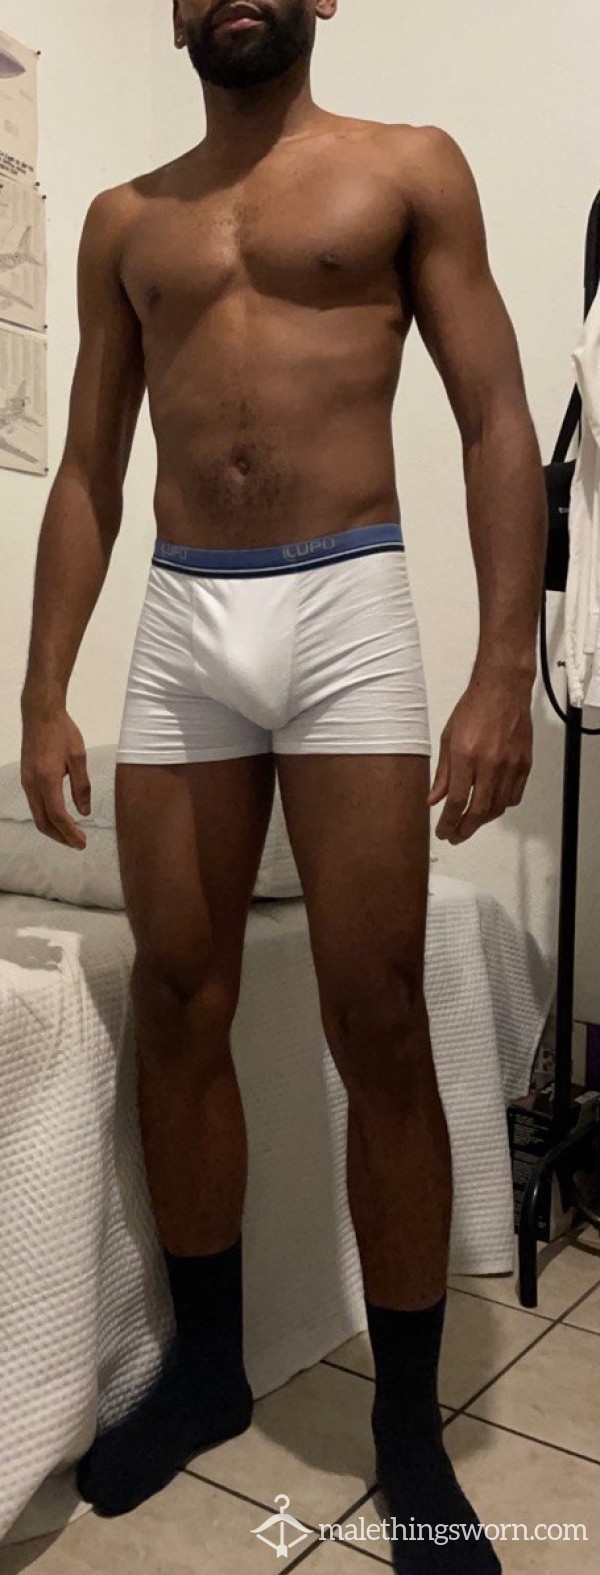 A Good White Underwear